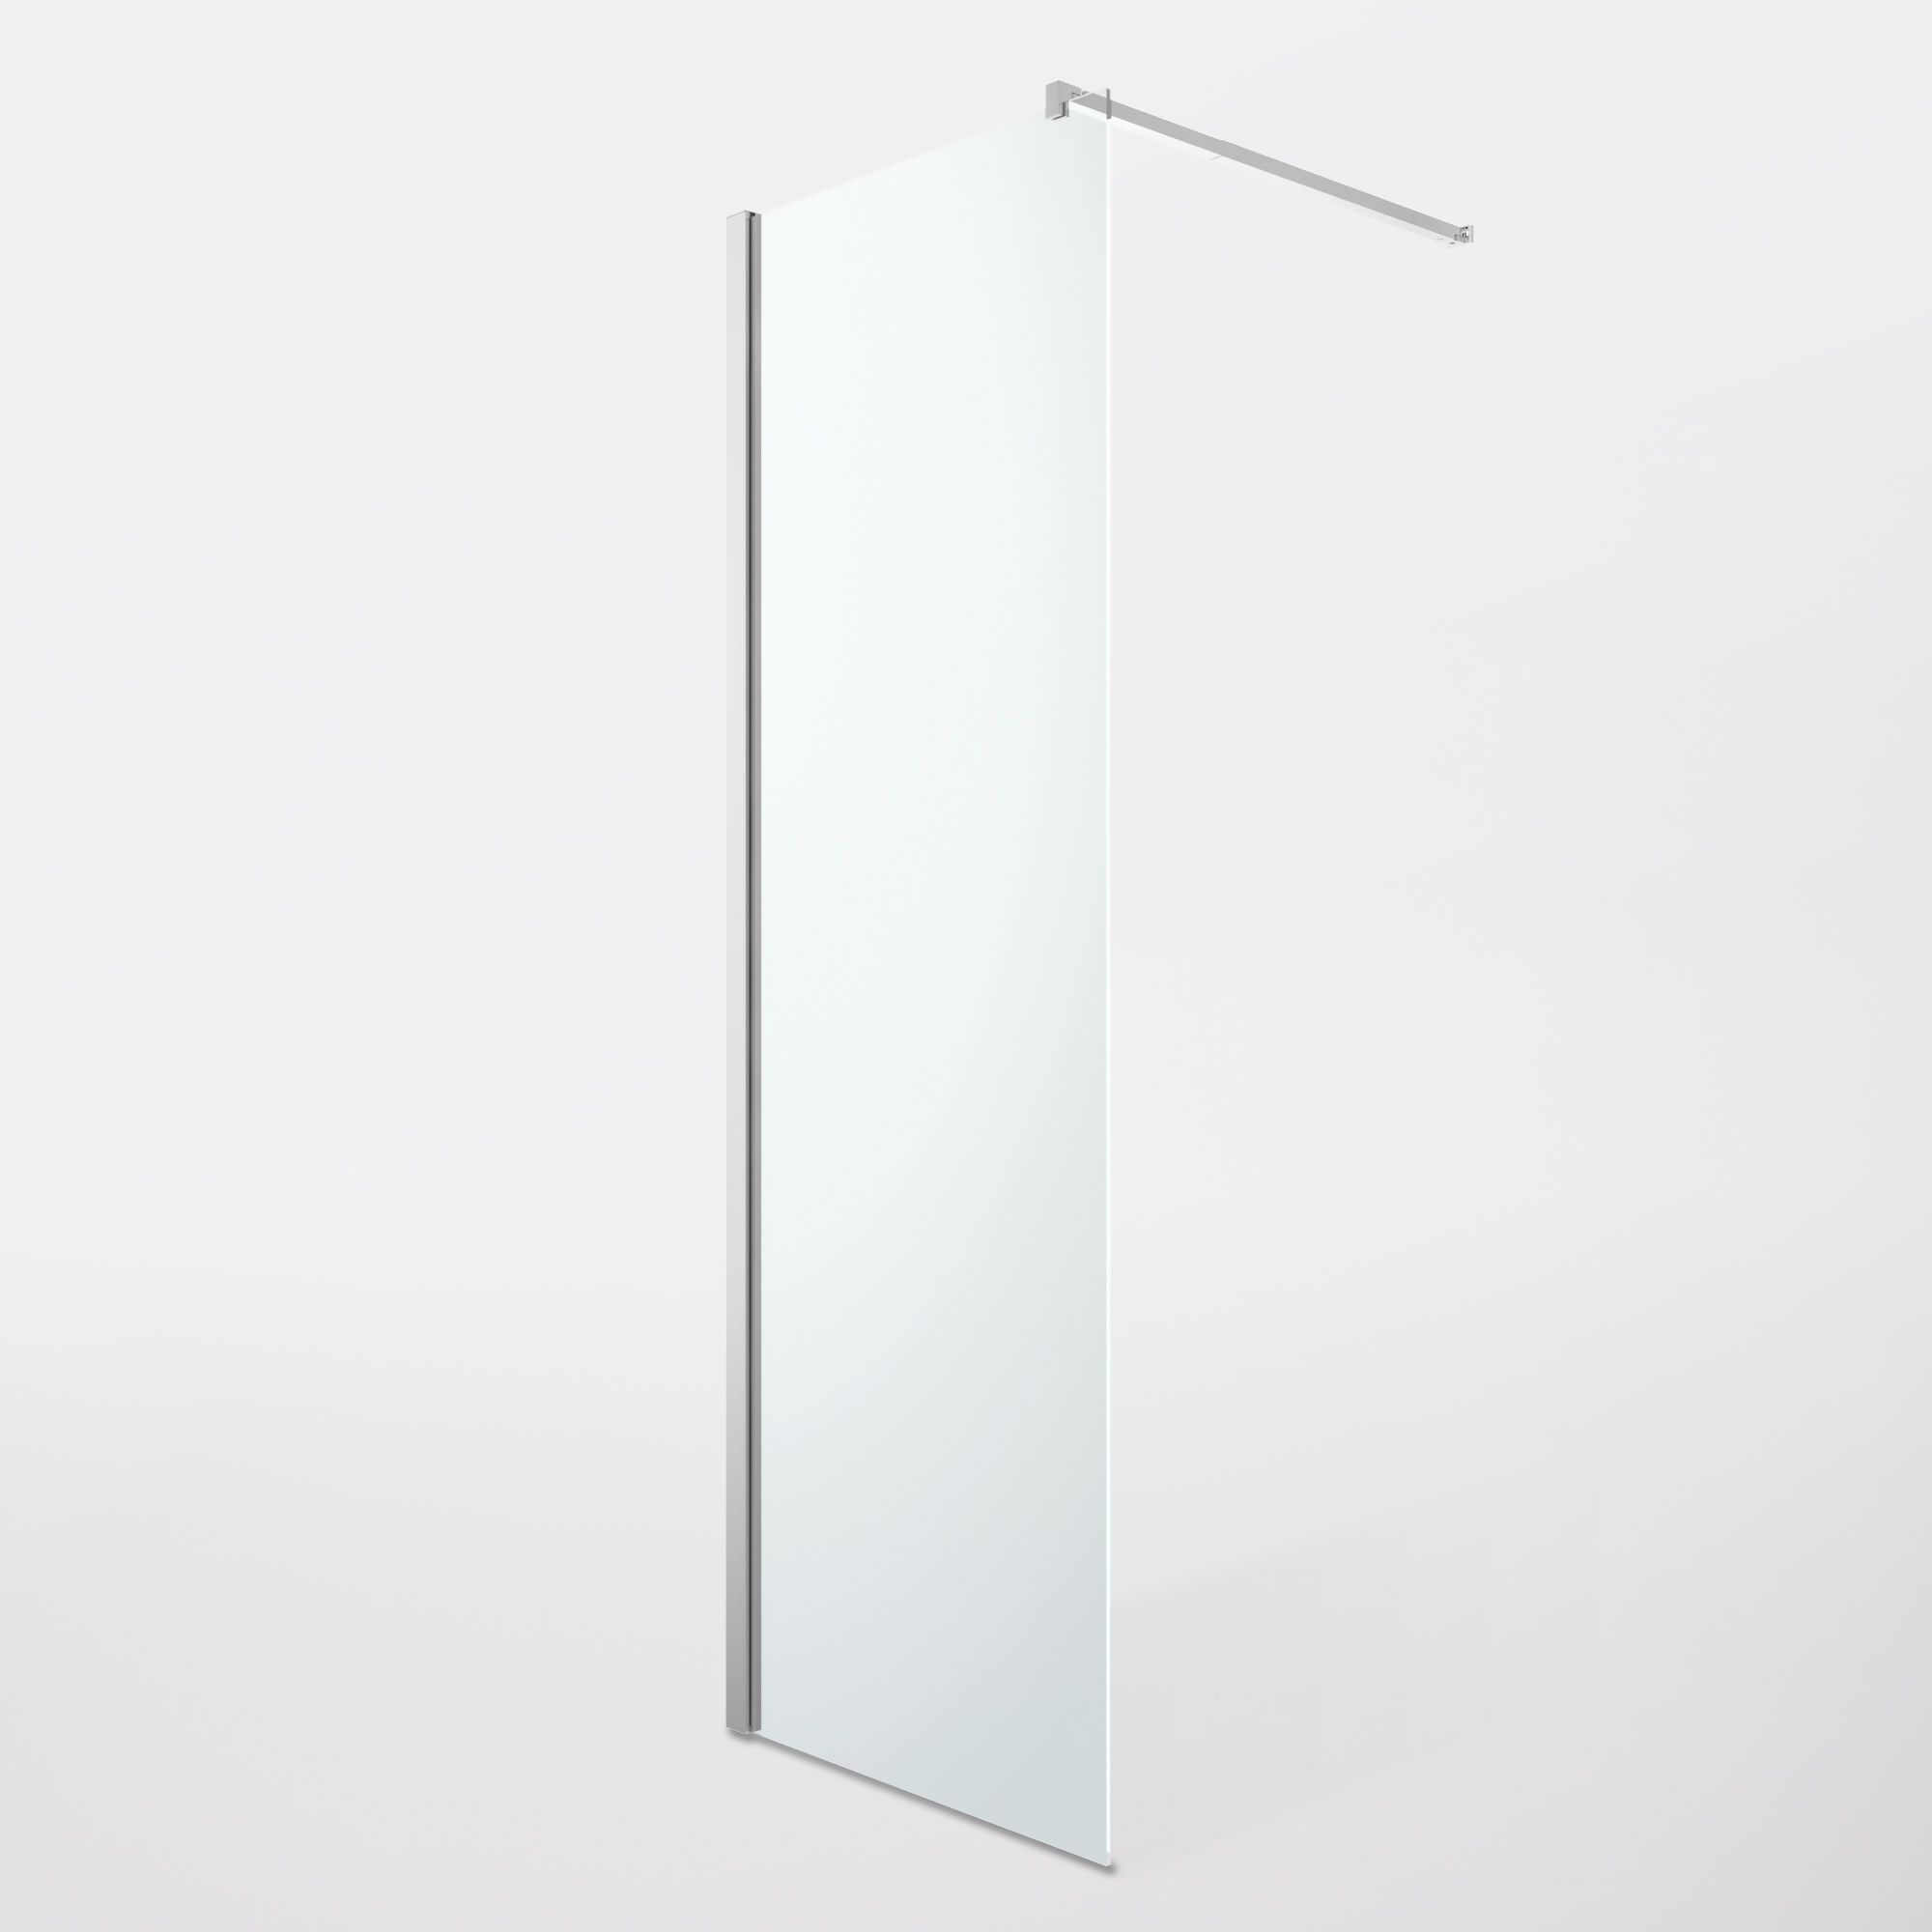 GoodHome Beloya Gloss Chrome effect Clear Walk-in Wet room glass screen (H)195cm (W)77.5cm